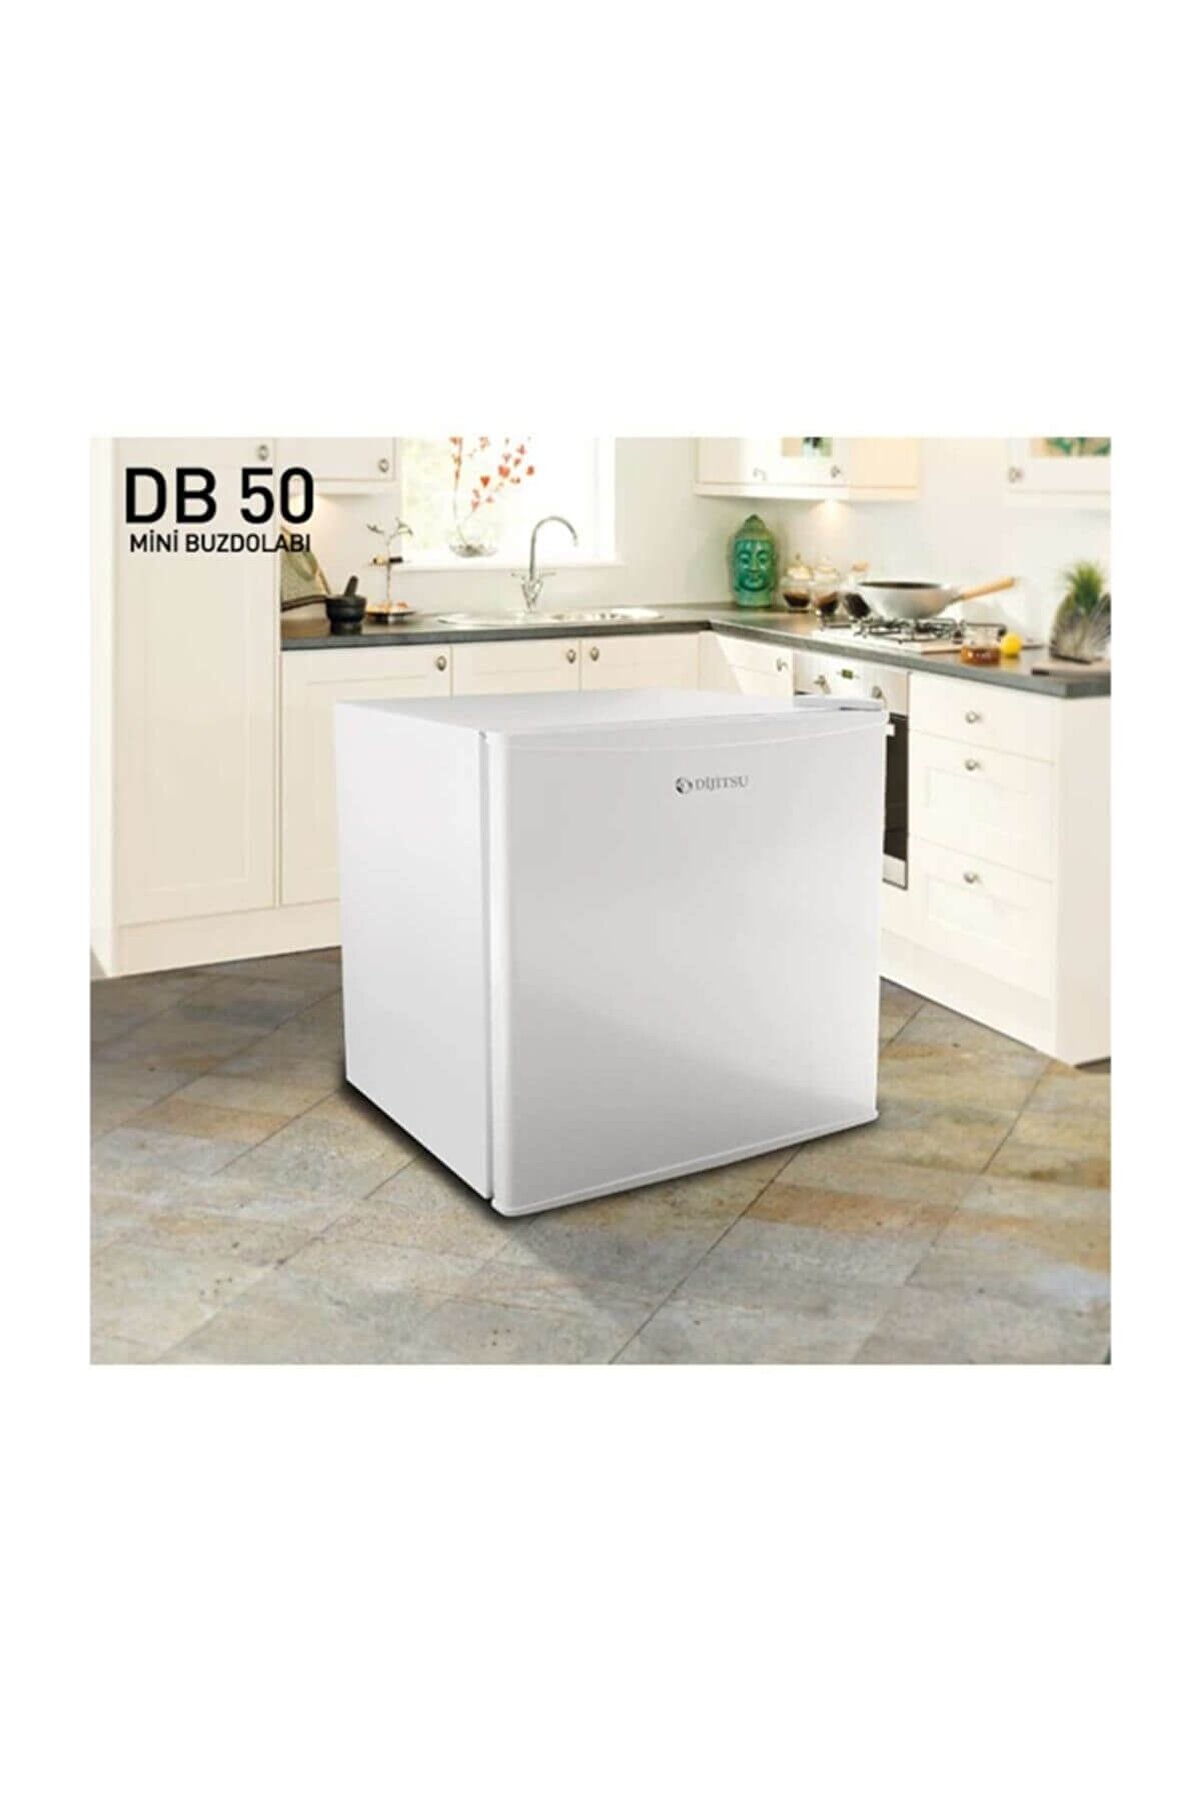 Dijitsu DB50 A+ 50 Lt Mini Buzdolabı